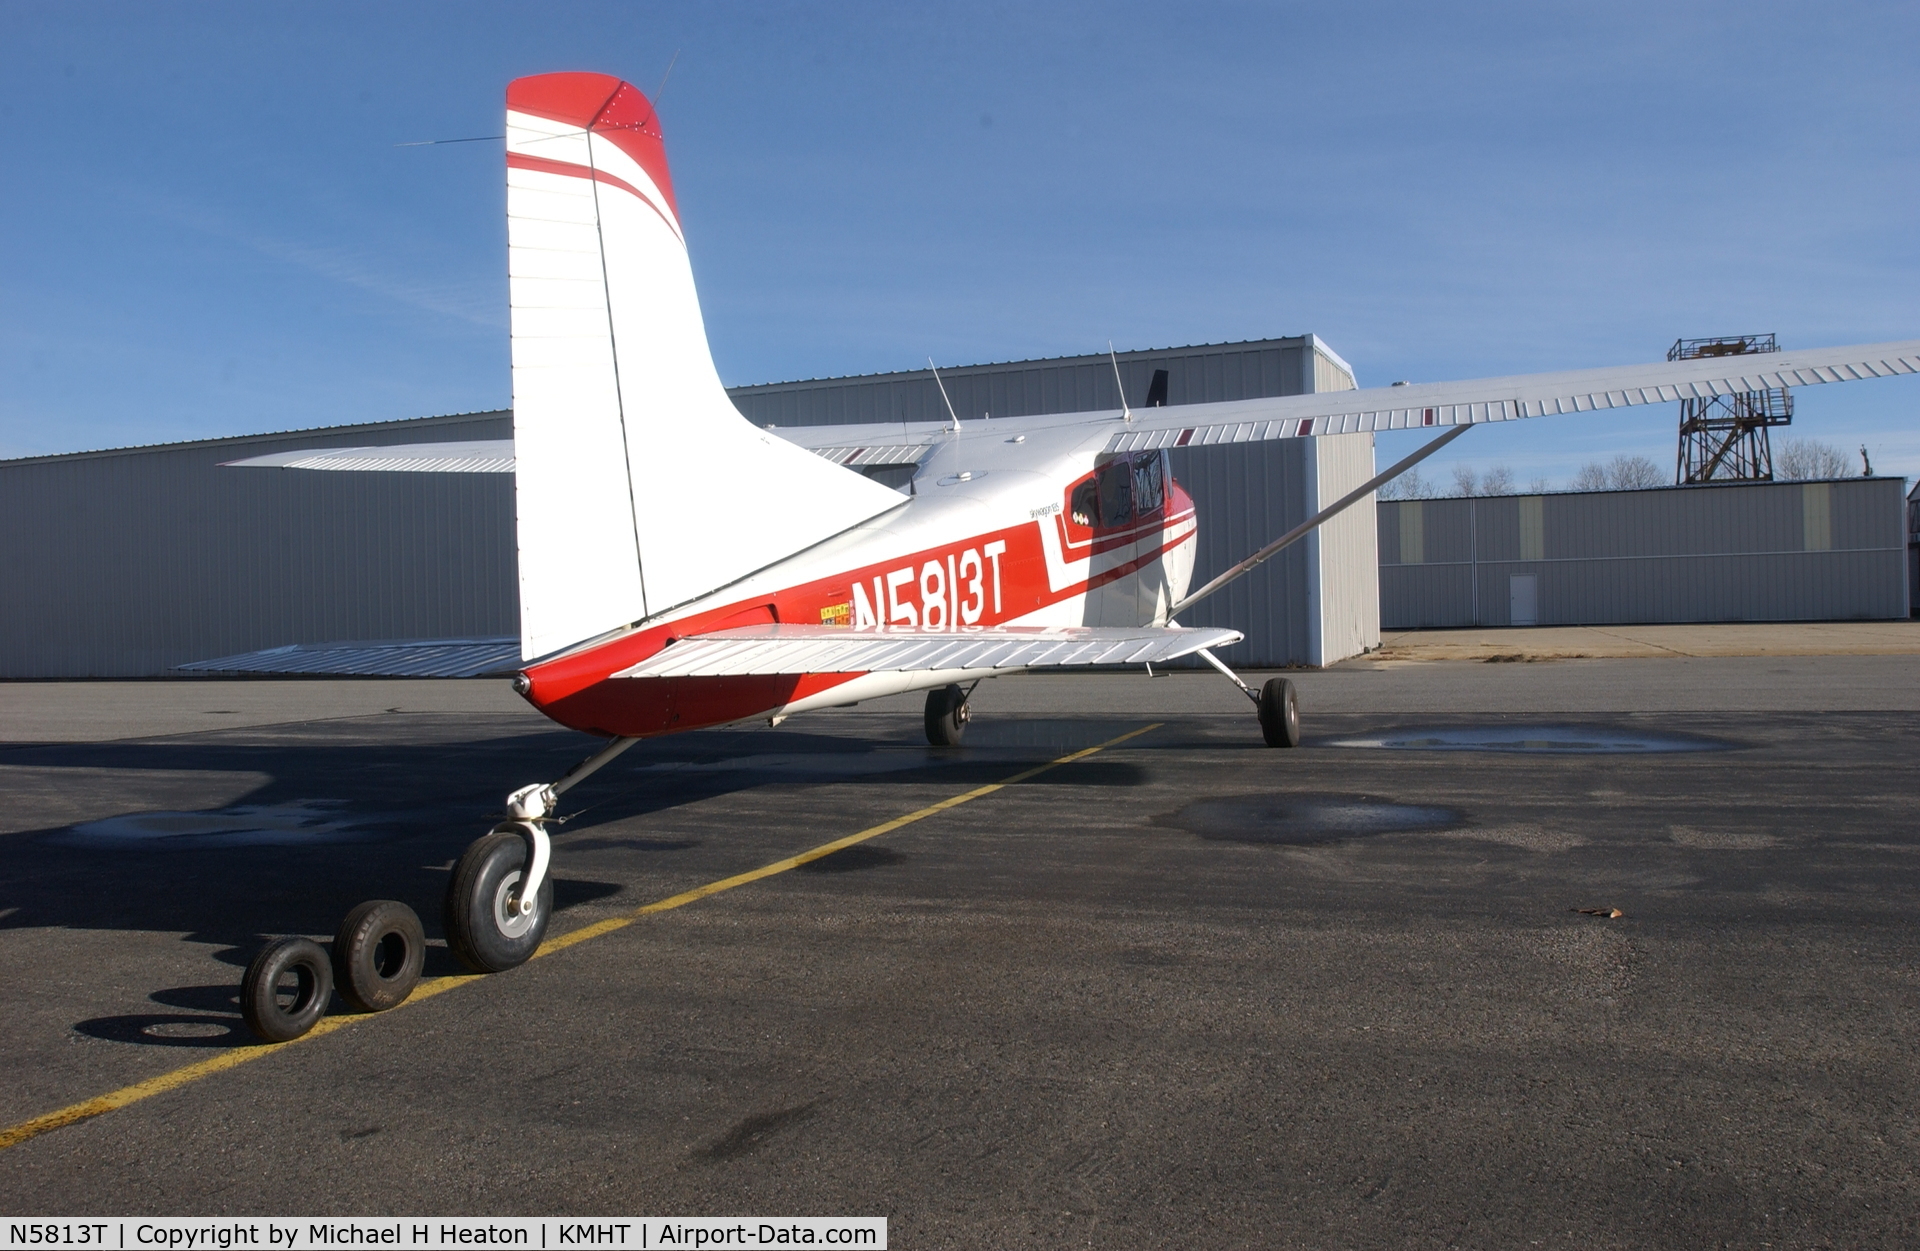 N5813T, 1964 Cessna 185C Skywagon C/N 185-0713, Mike Heaton's Skywaggon - N5813T